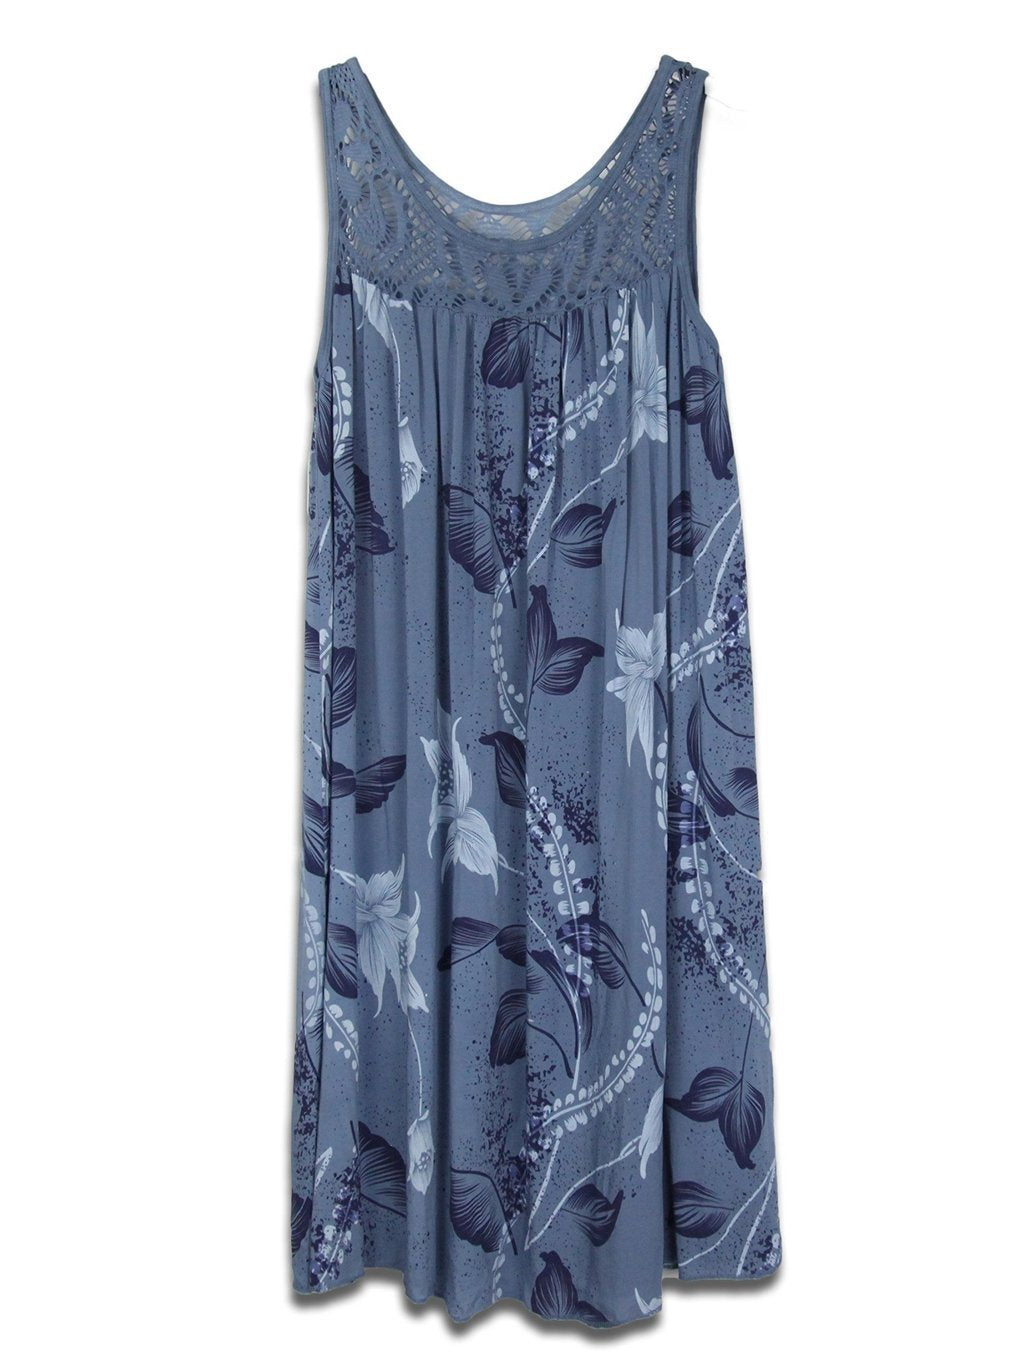 Women's Lace Stitching Printing Sleeveless Swing Dress Dresses